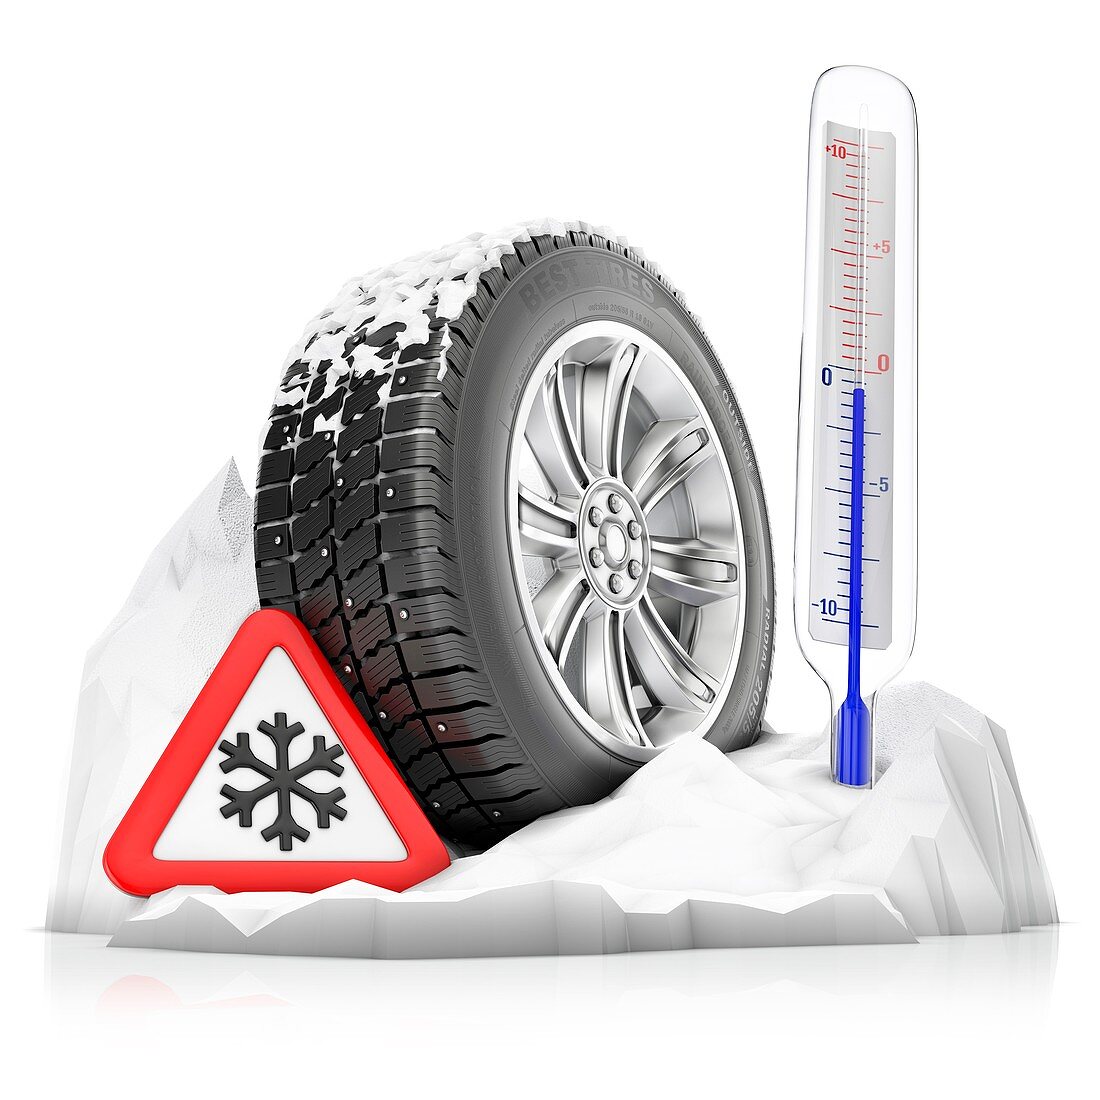 Winter tyre, illustration